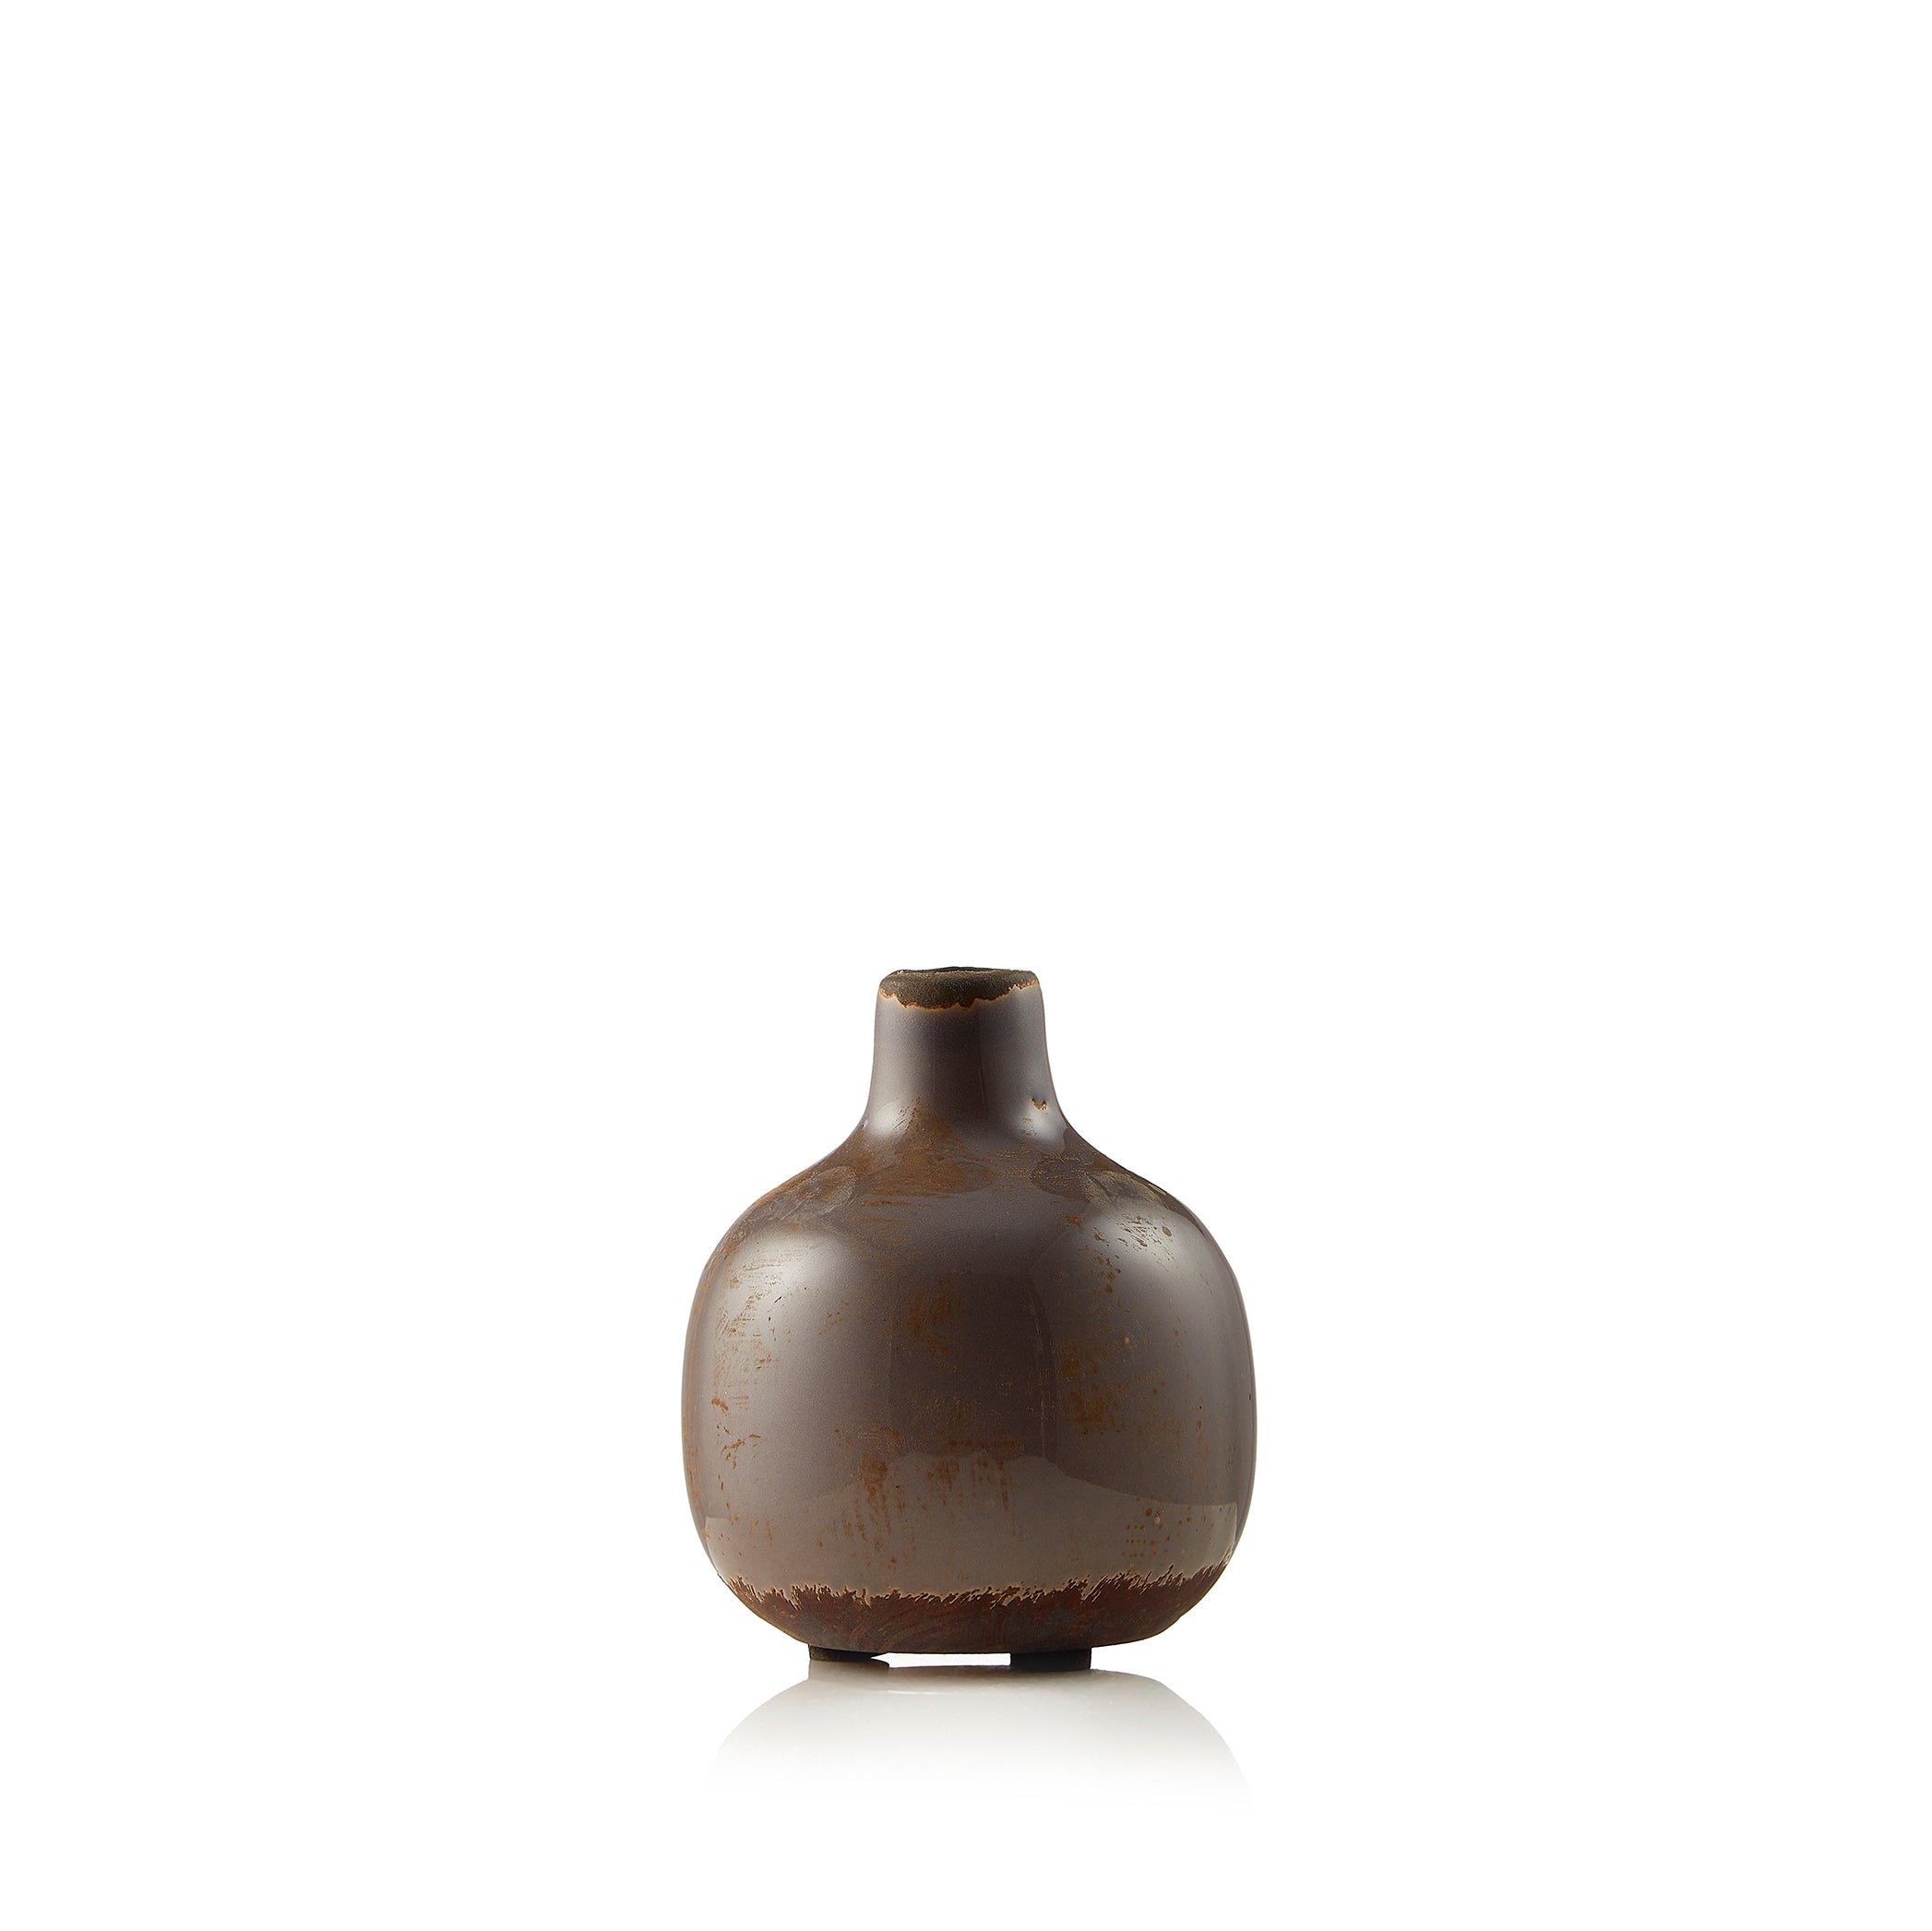 Ceramic Crackled Vase in Parma